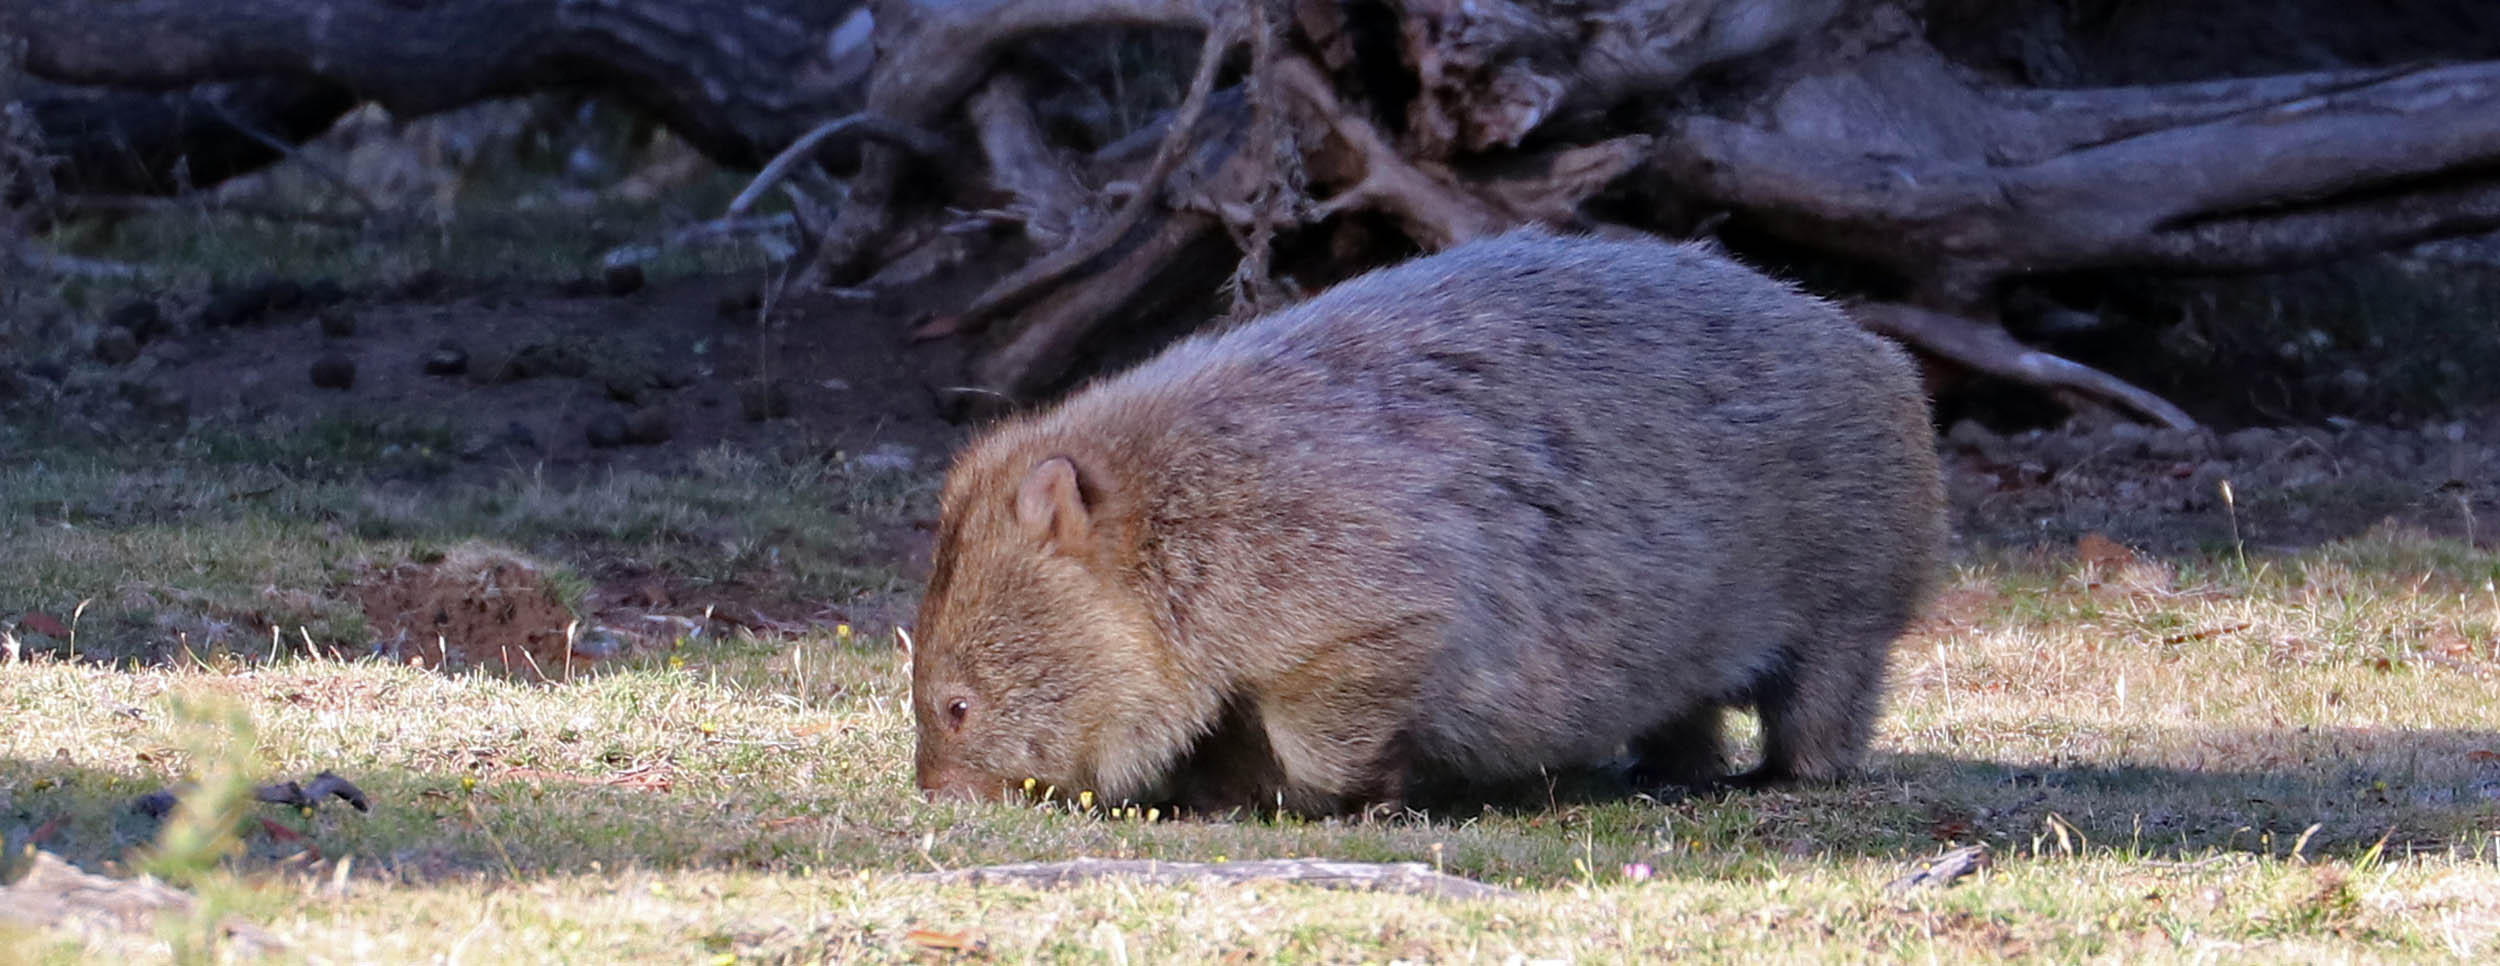 wombat-maria